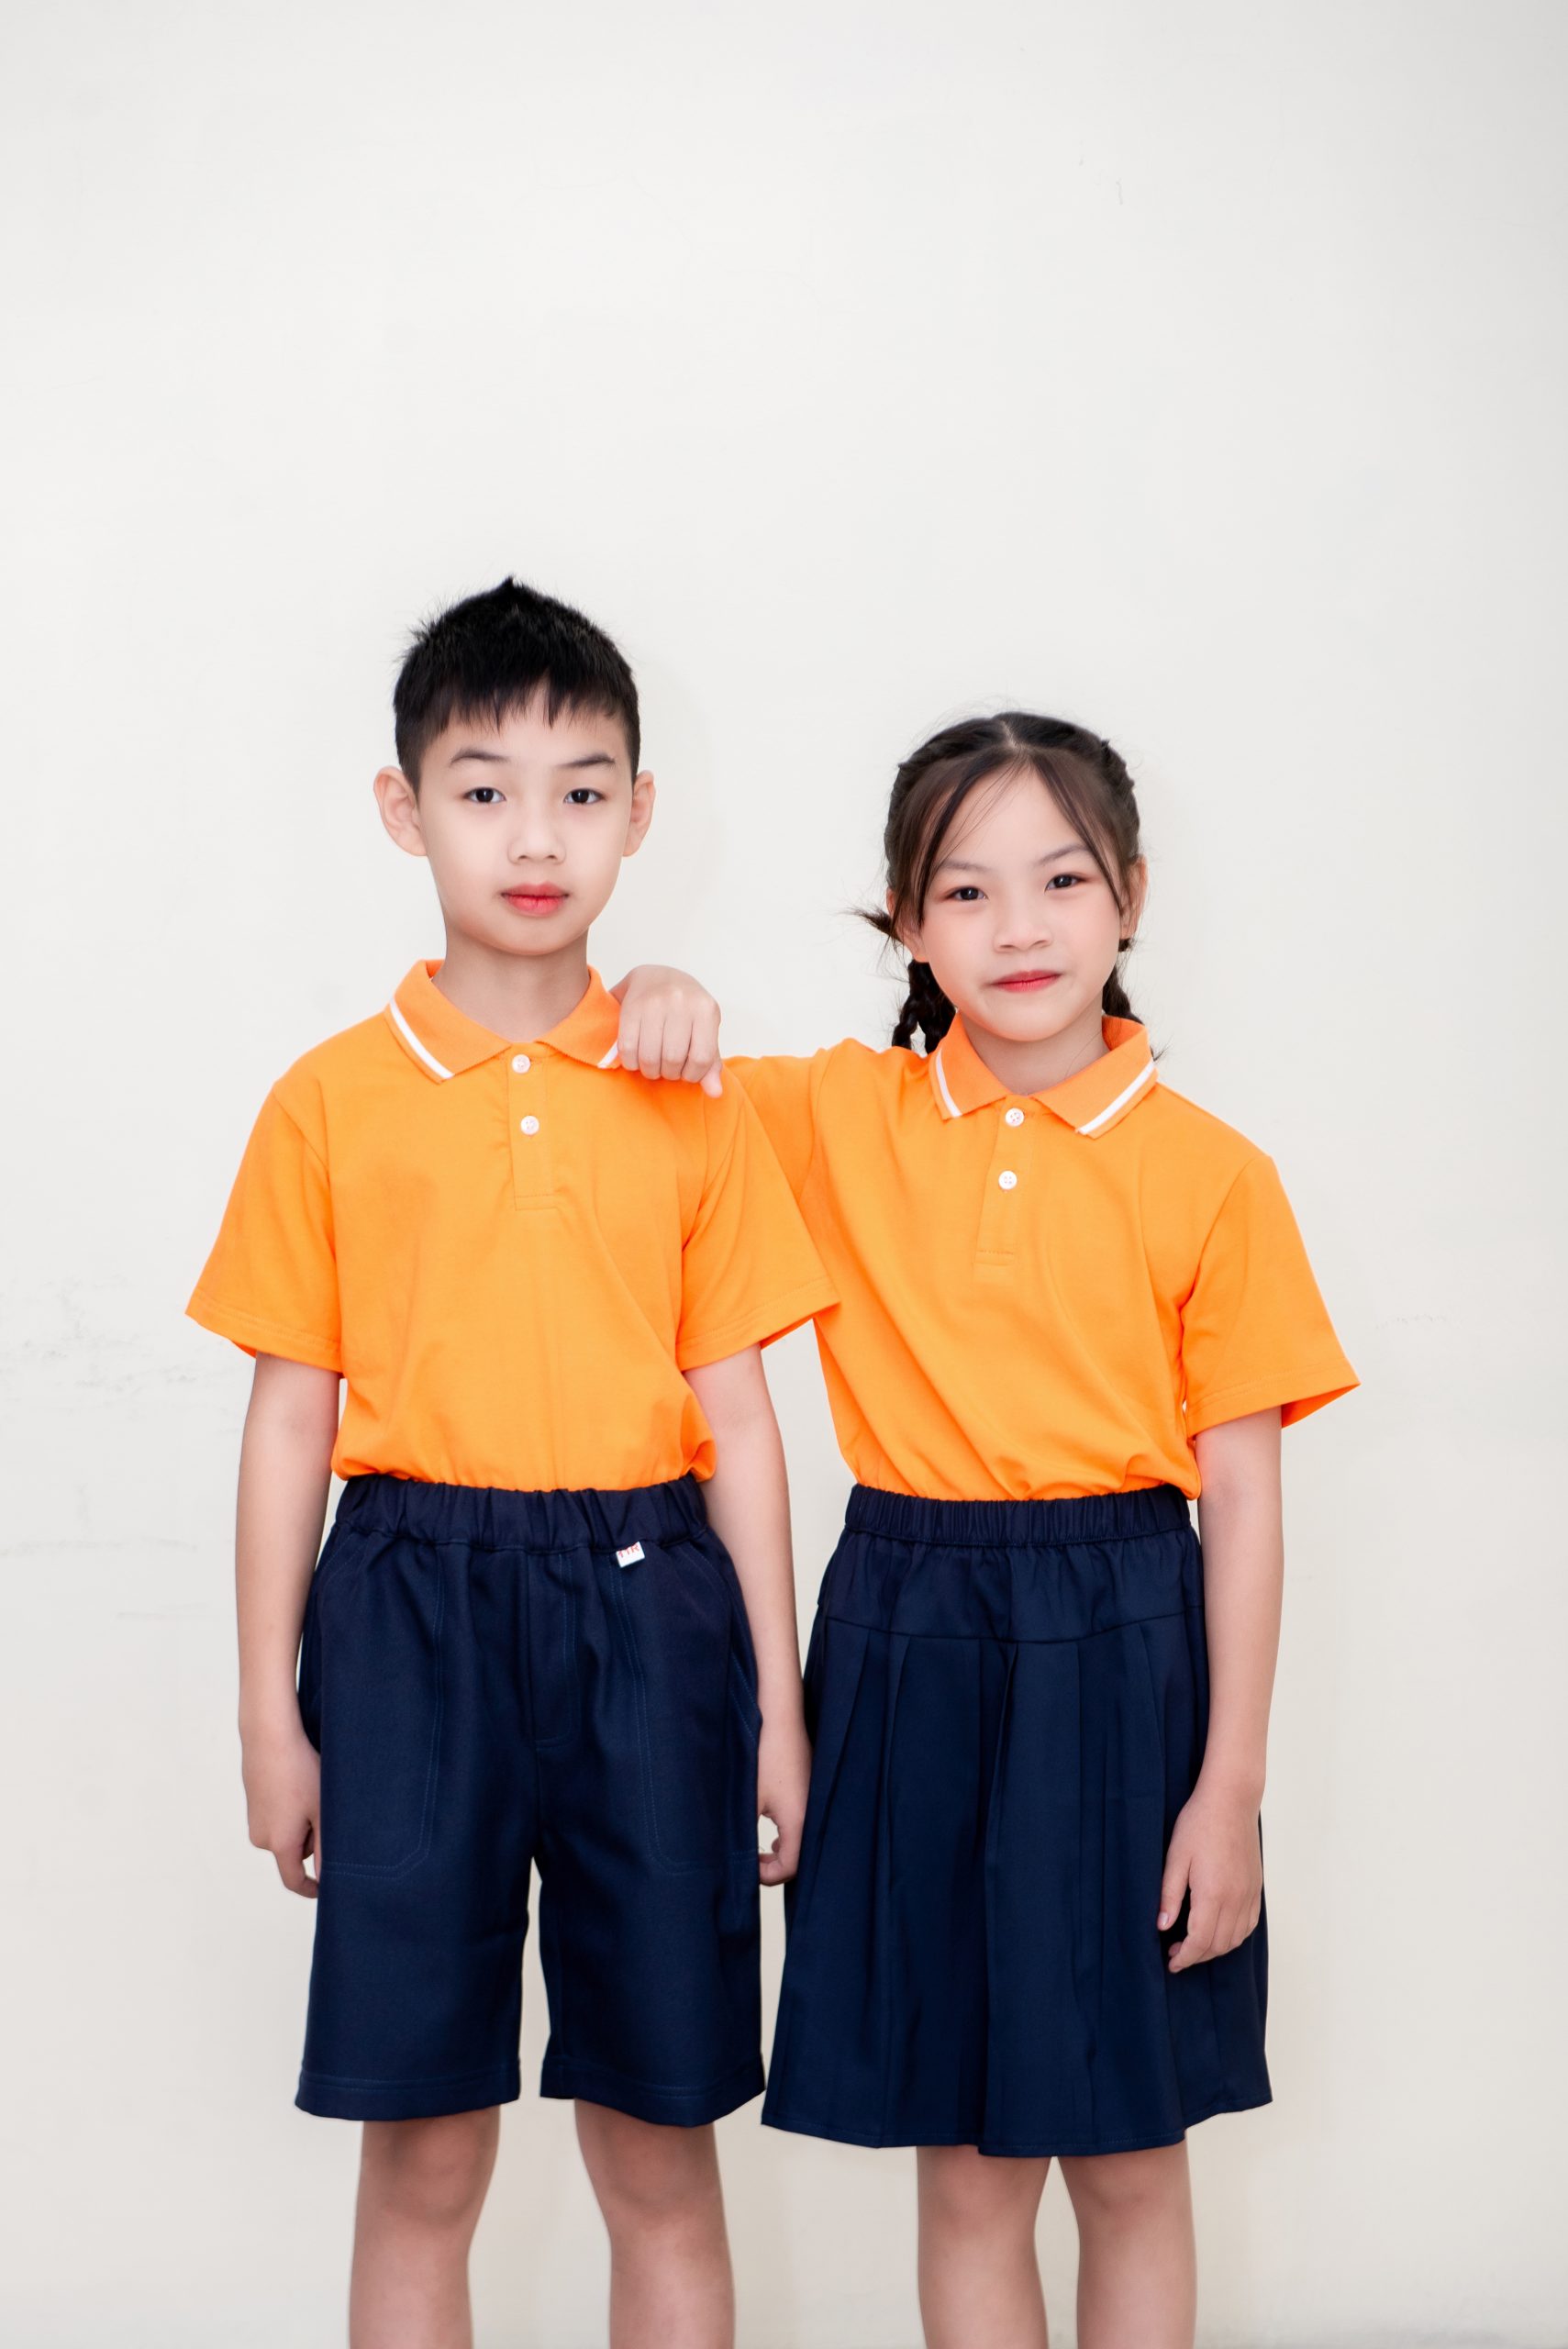 MAY SẴN] Áo sơ mi trắng cho học sinh tiểu học, áo vải đẹp thoáng mát giá rẻ  TPHCM - Hà Nội